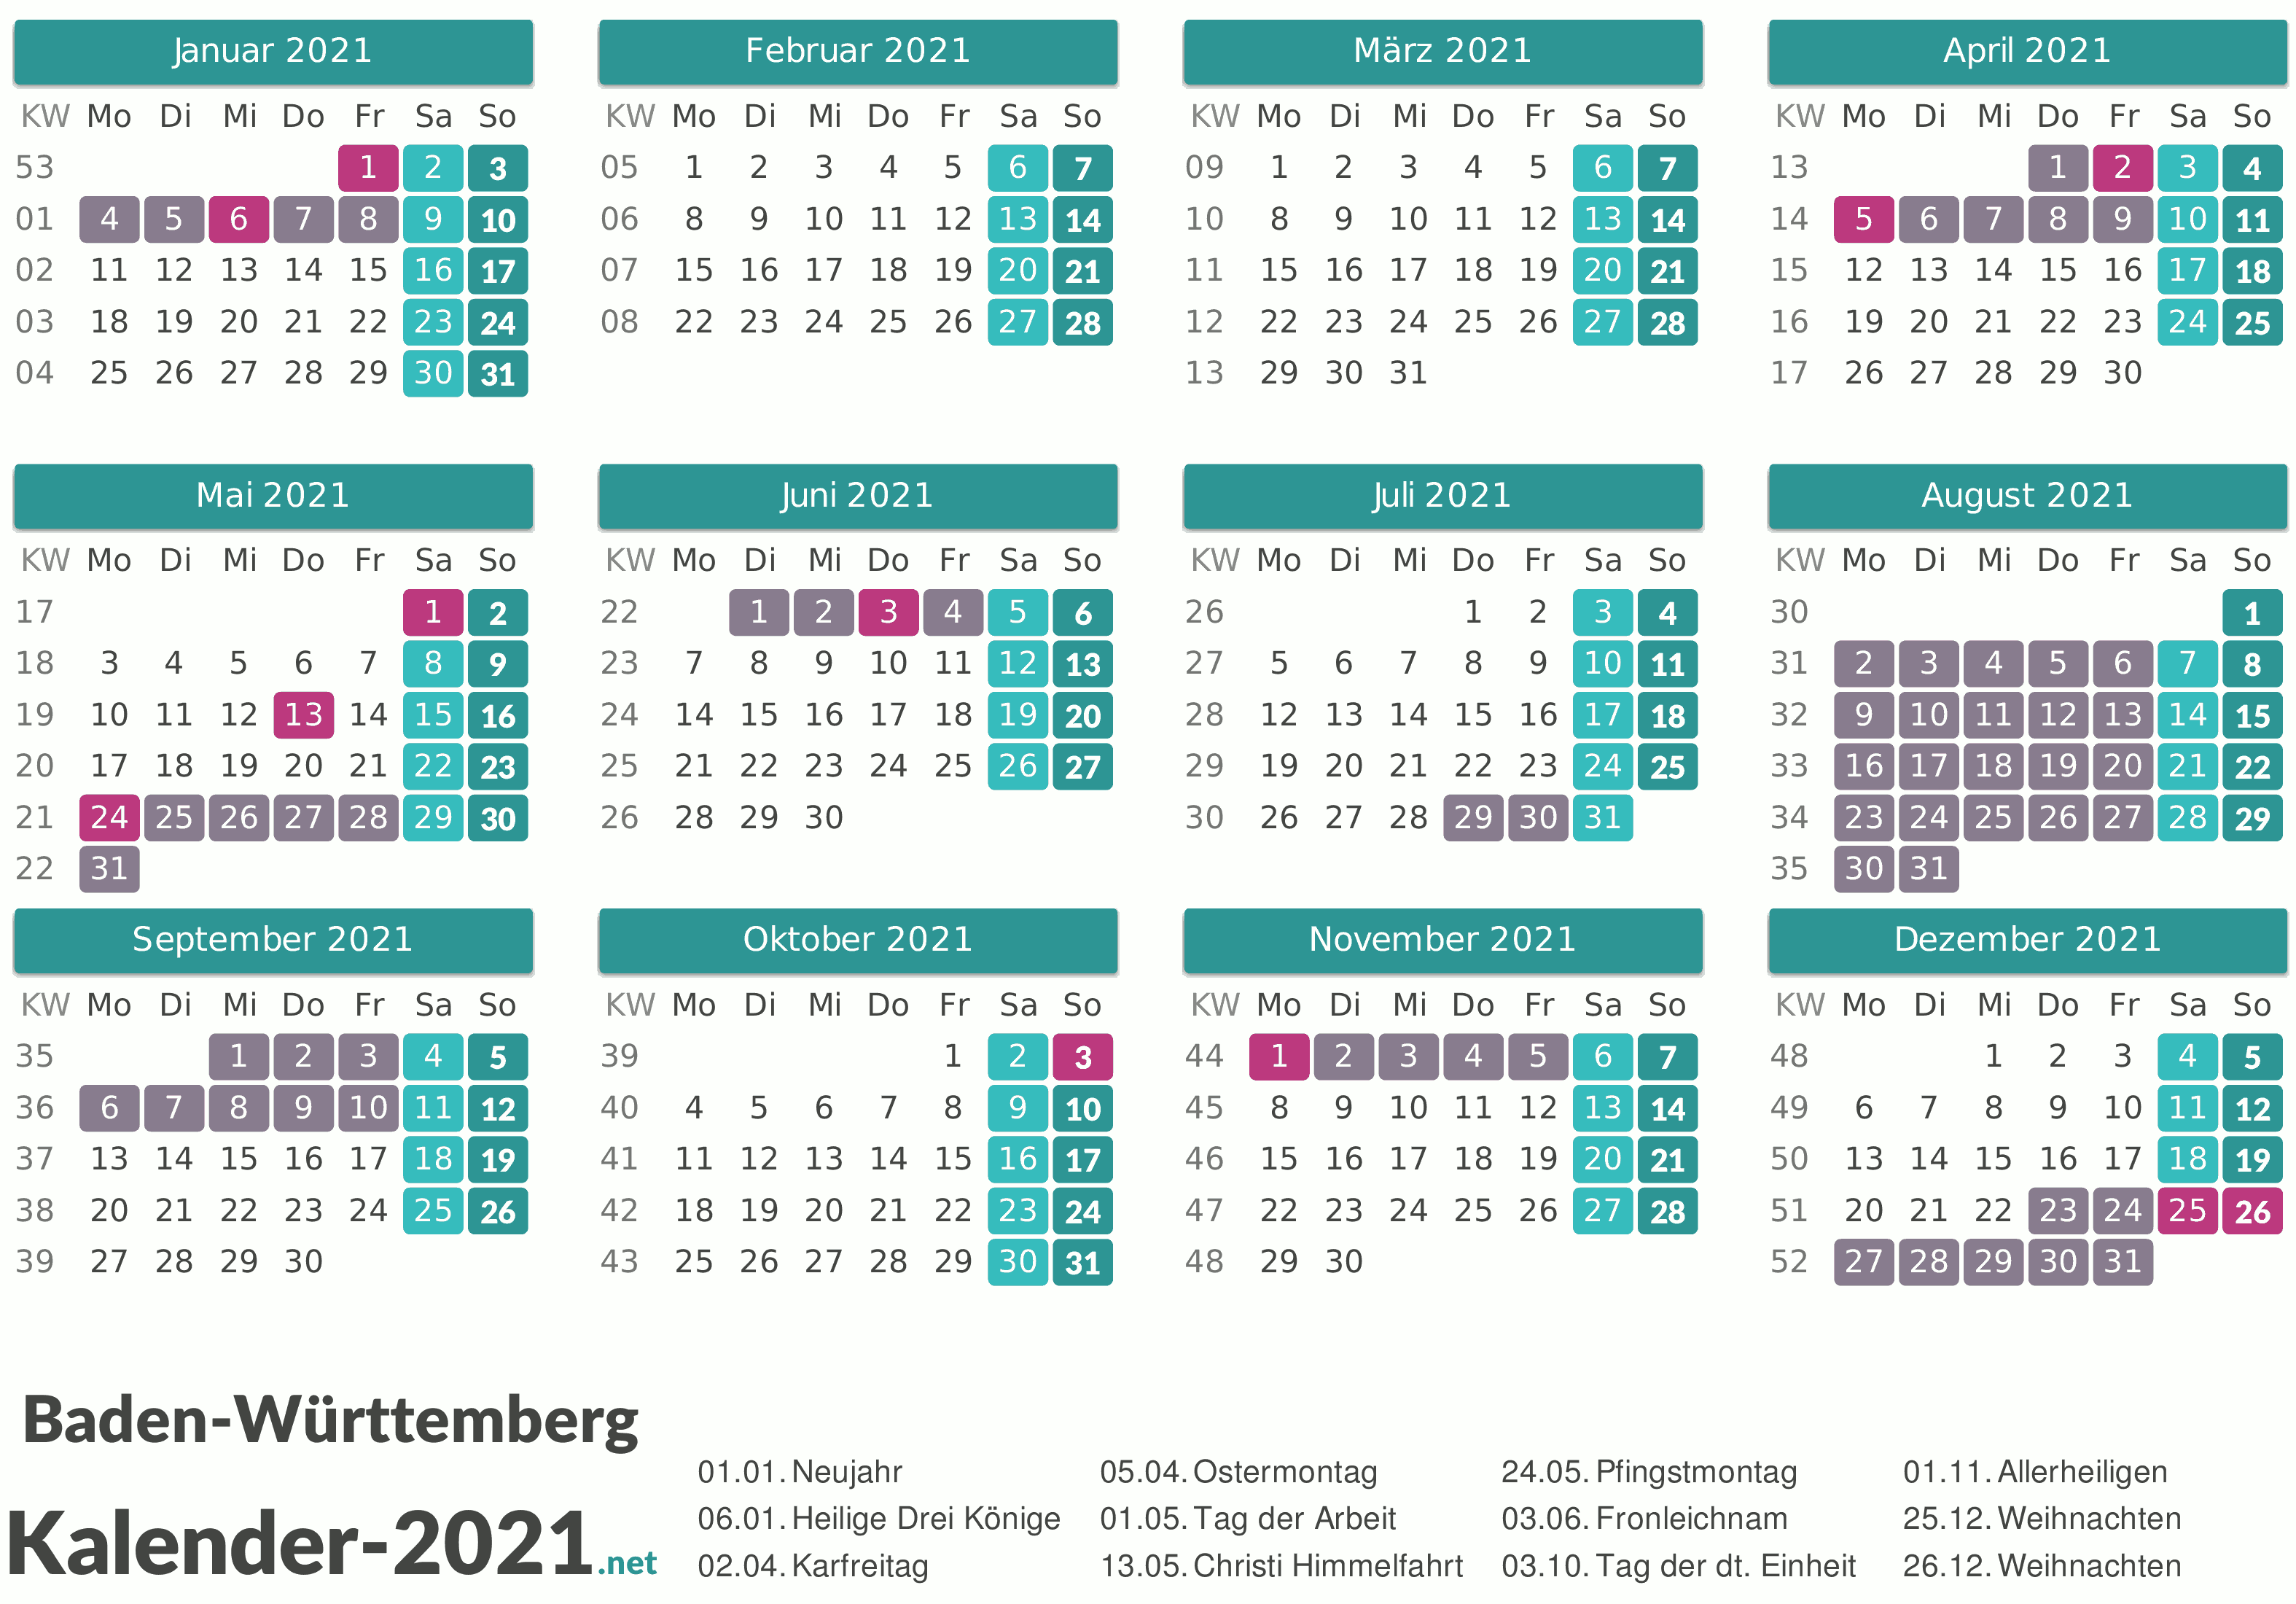 KALENDER 2021 ZUM AUSDRUCKEN - Kostenlos!